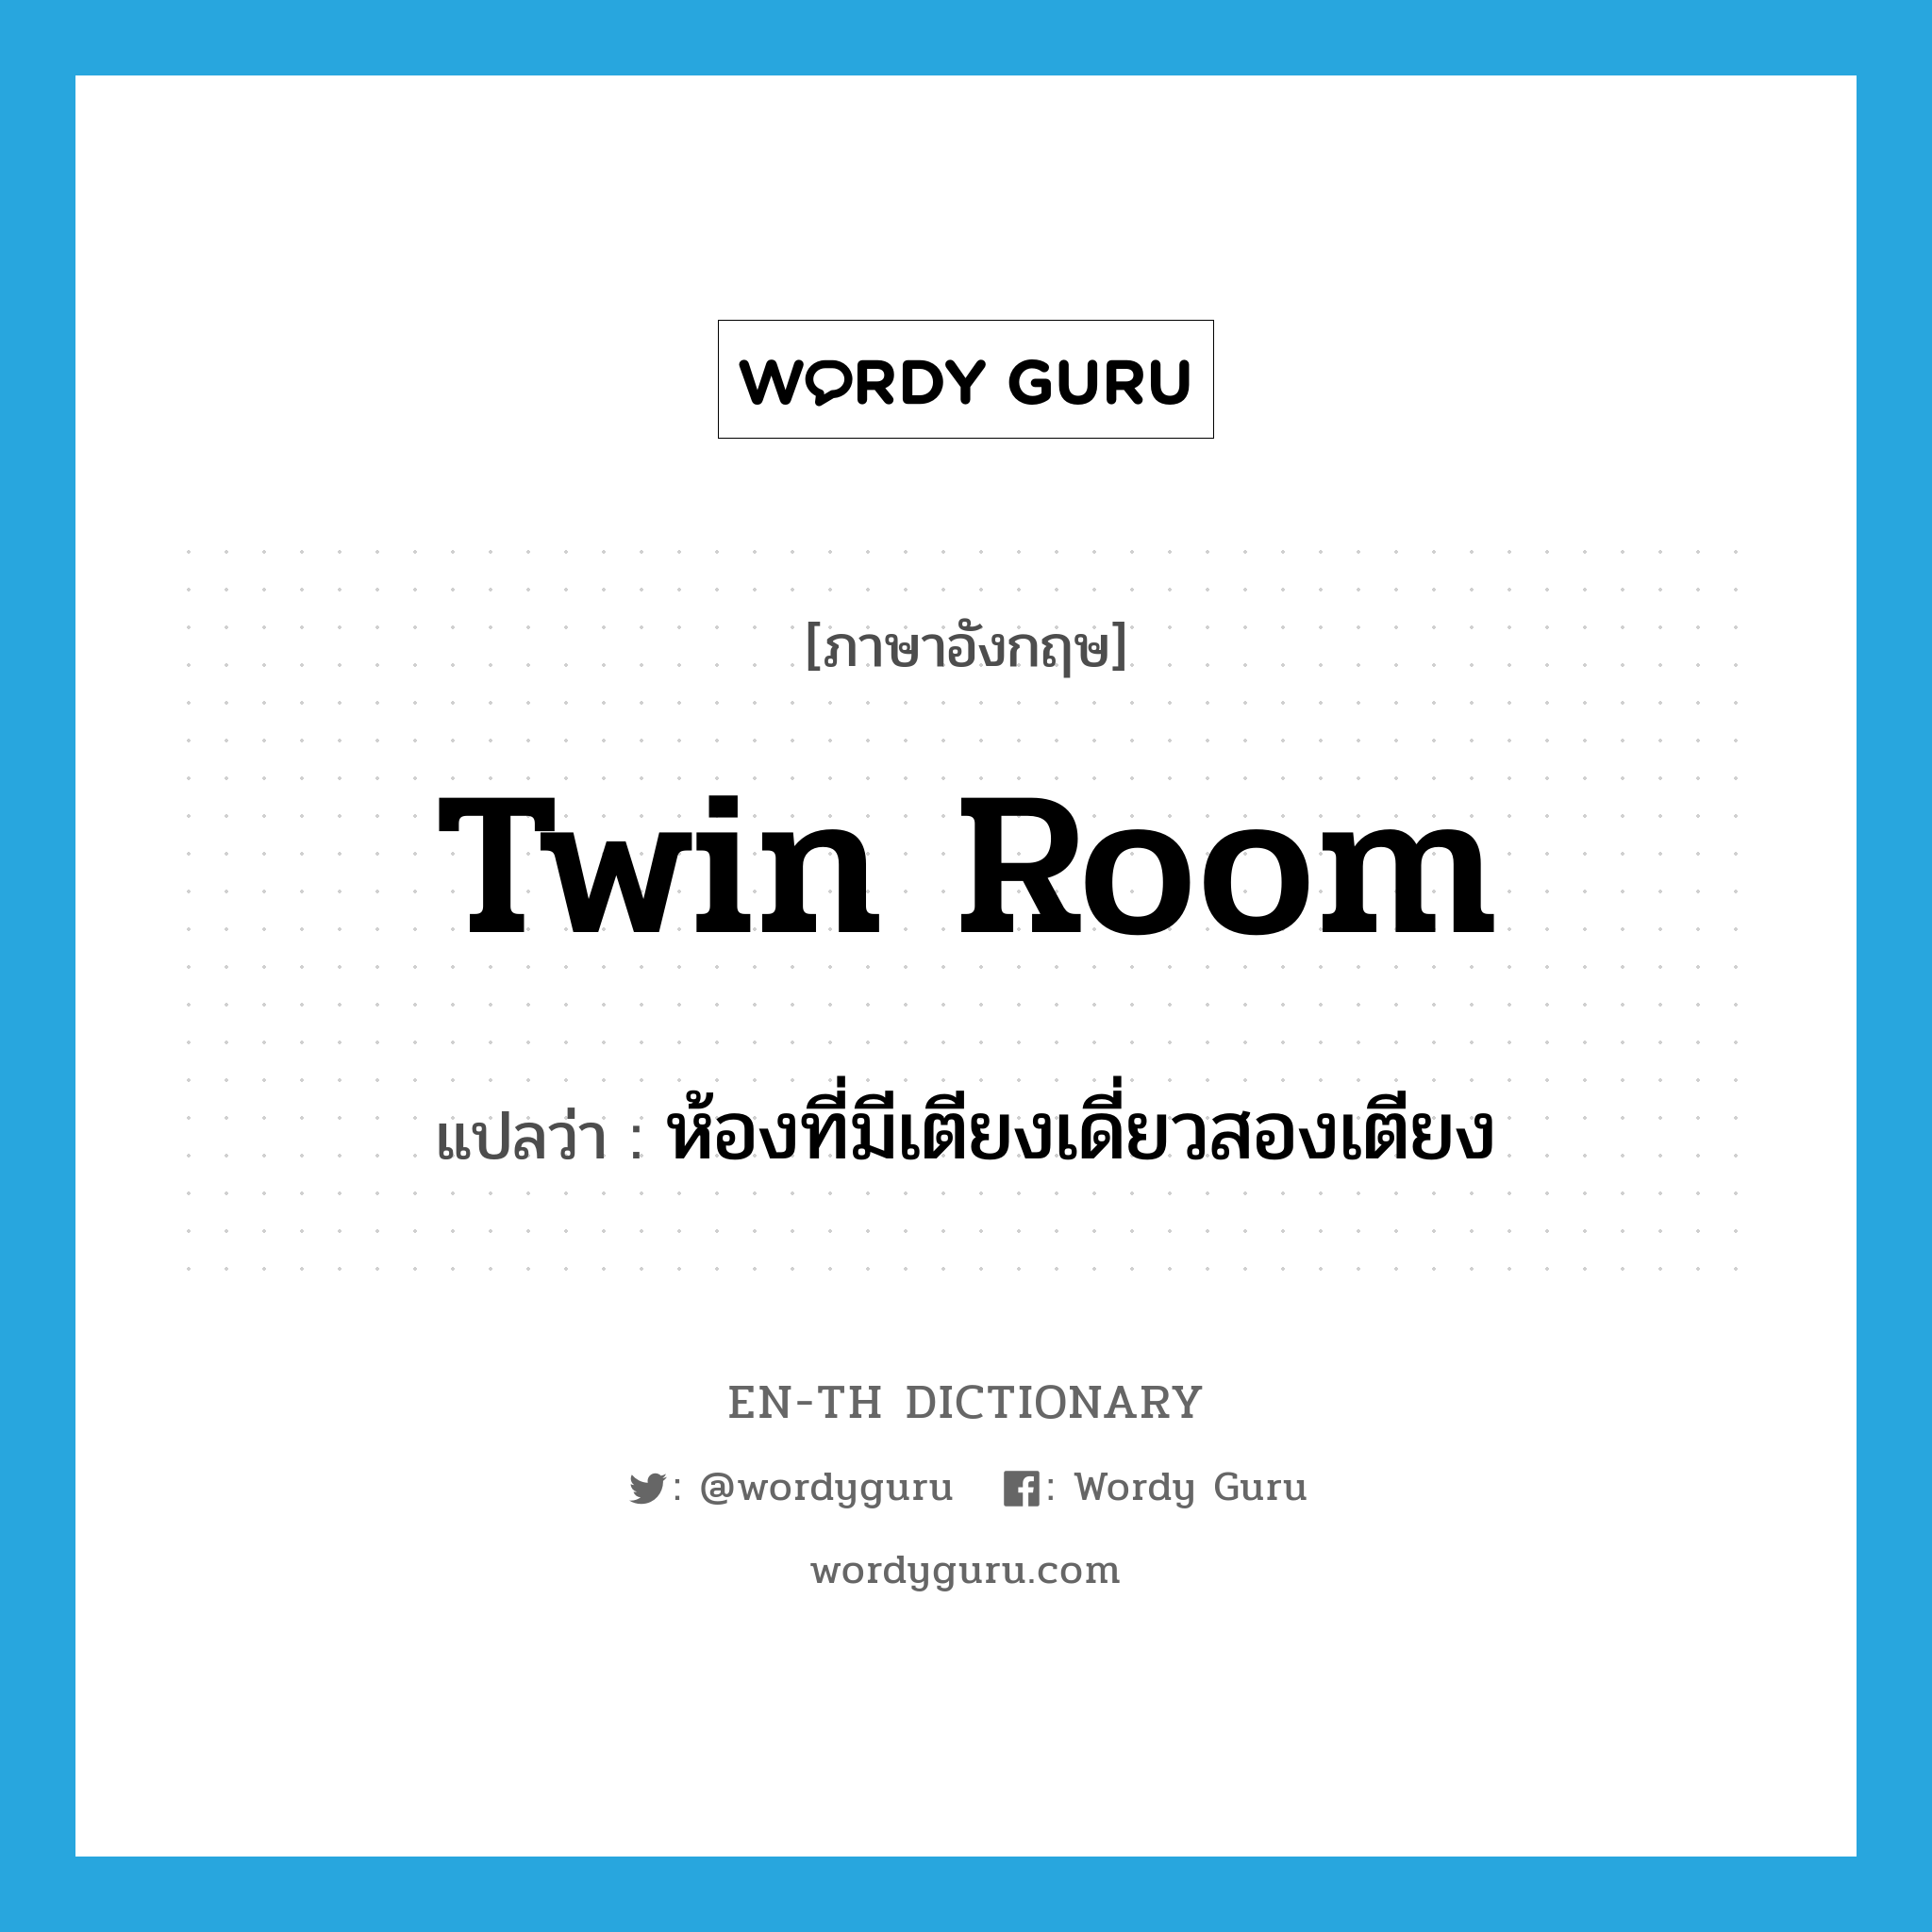 twin room แปลว่า?, คำศัพท์ภาษาอังกฤษ twin room แปลว่า ห้องที่มีเตียงเดี่ยวสองเตียง ประเภท N หมวด N